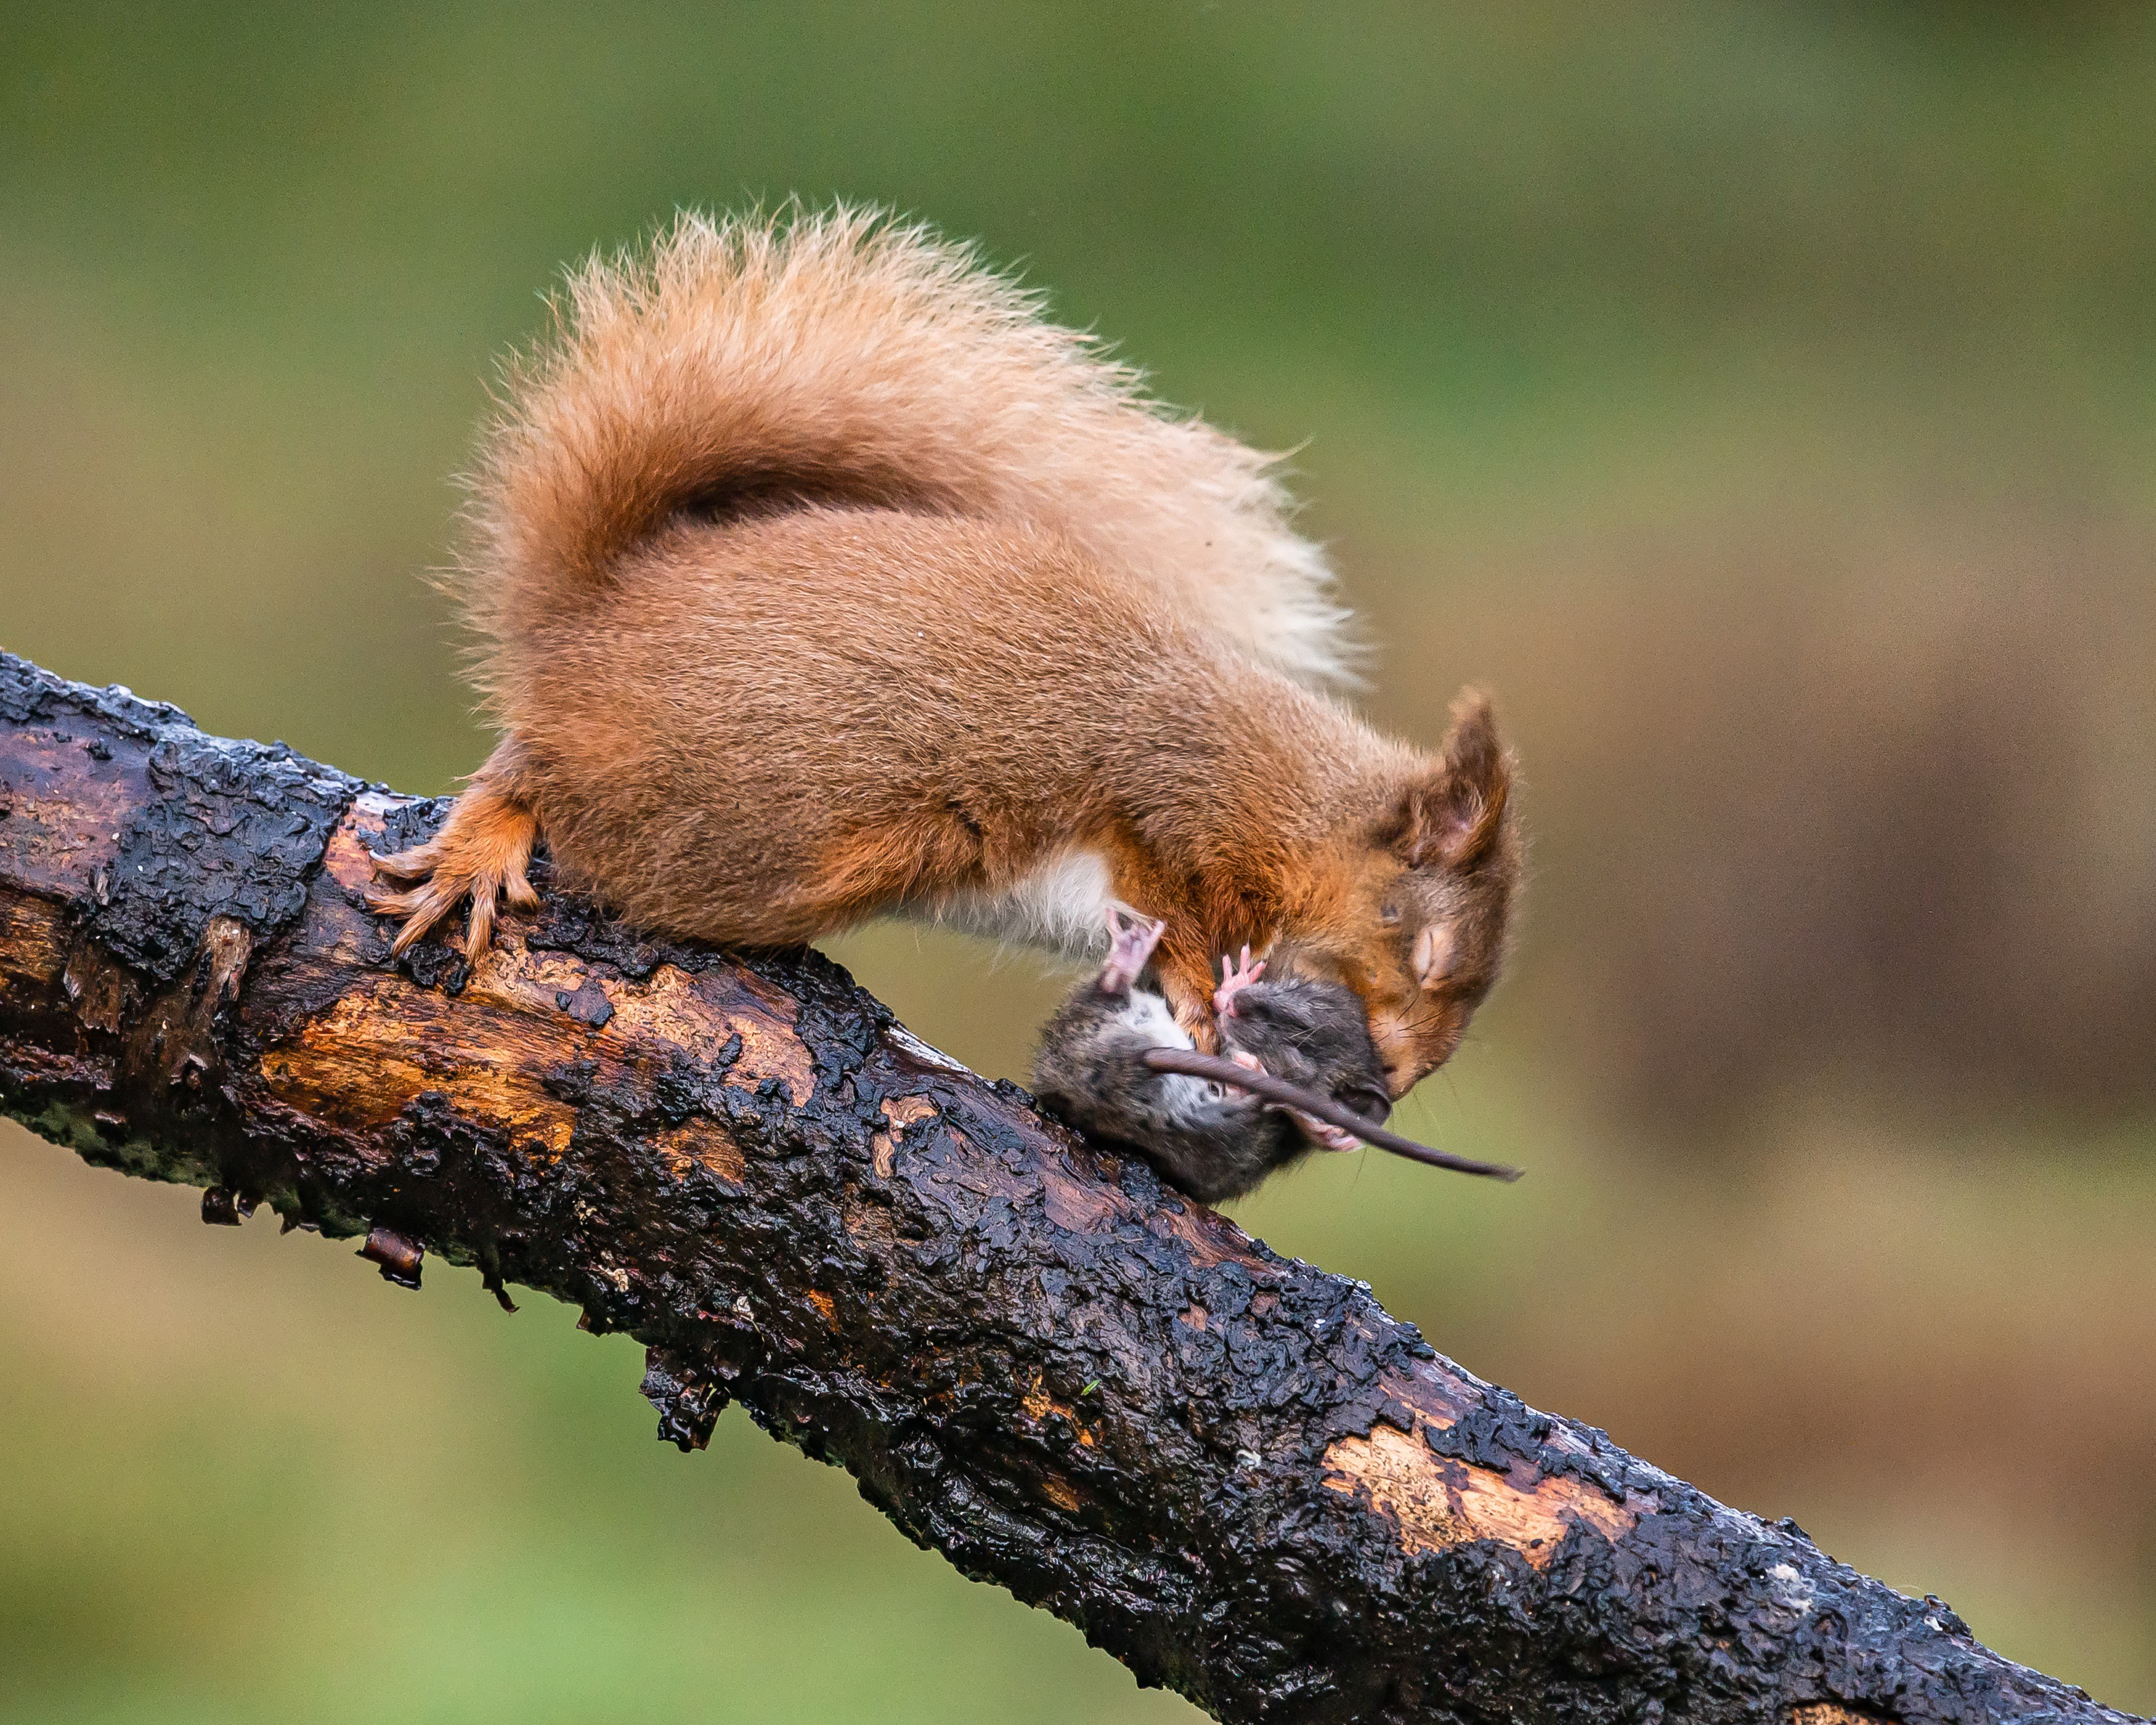 Megdöbbentő fotók: Így végzett a mókus a területére tévedt patkánnyal -  Blikk